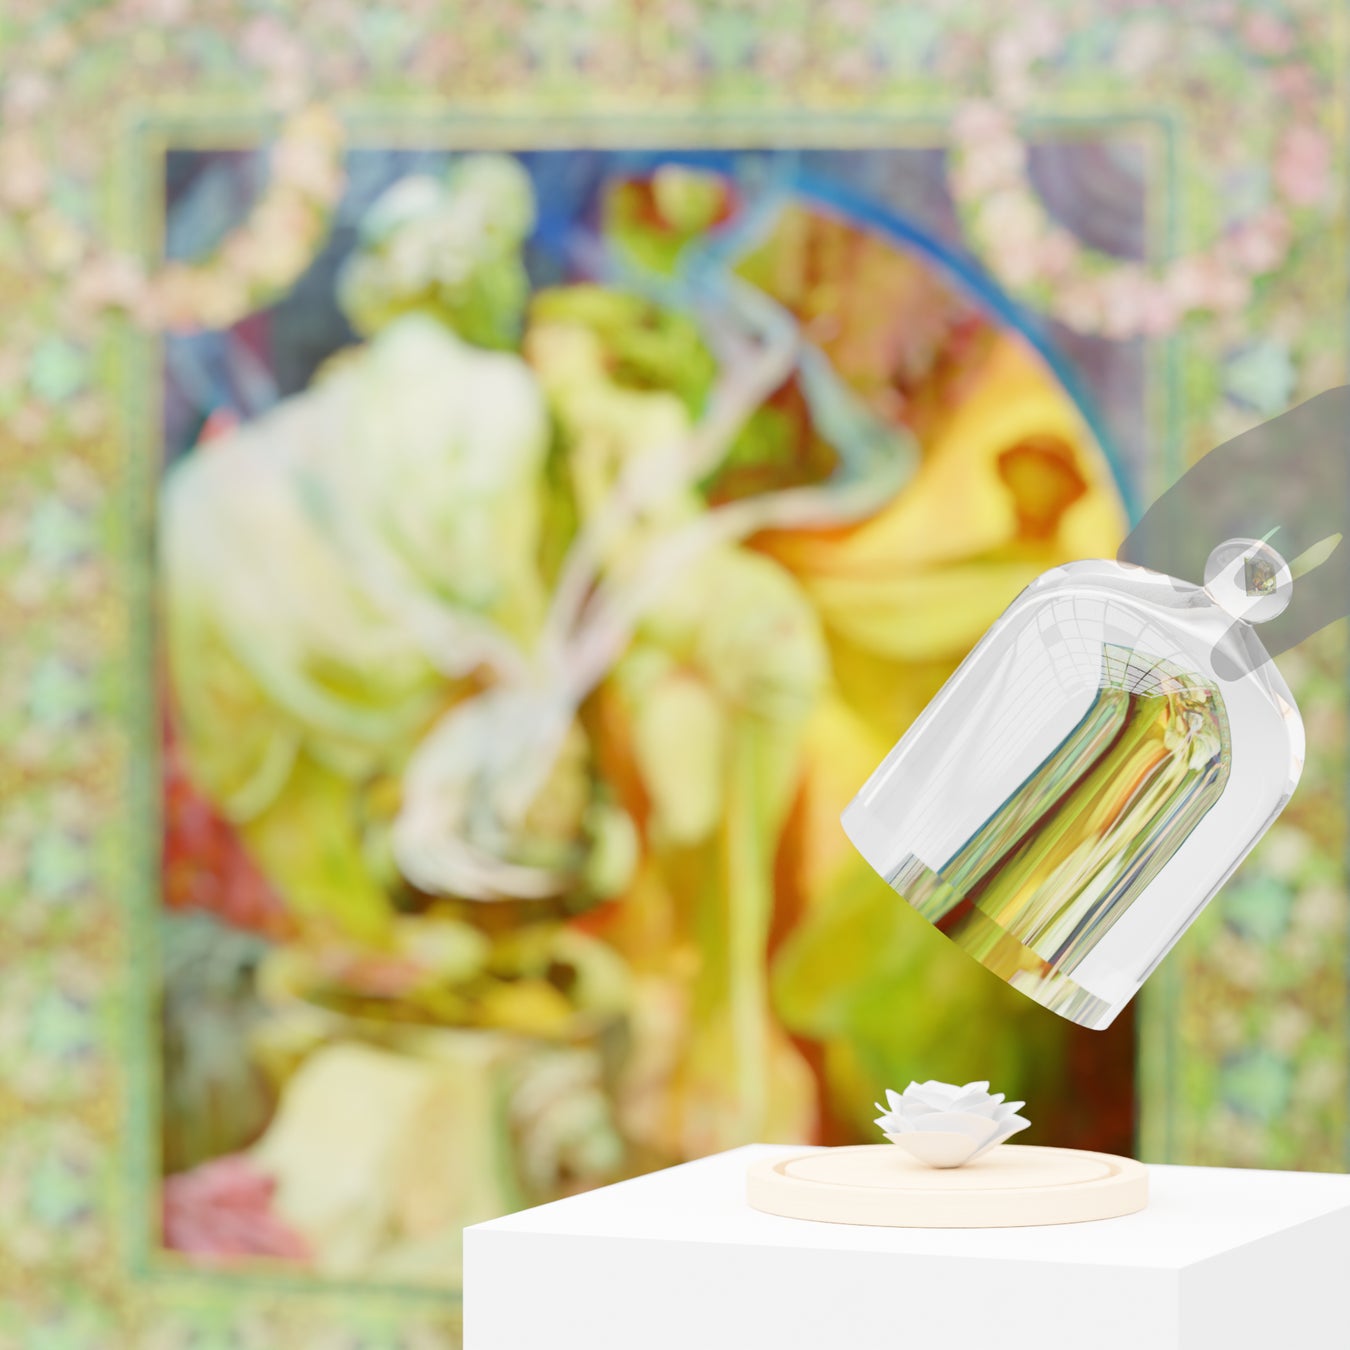 フレグランスベンチャーのコードミーが、堺 アルフォンス・ミュシャ館の企画展で 「ミュシャの絵」x「香り」の鑑賞体験型スペシャルフレグランスを制作のサブ画像1